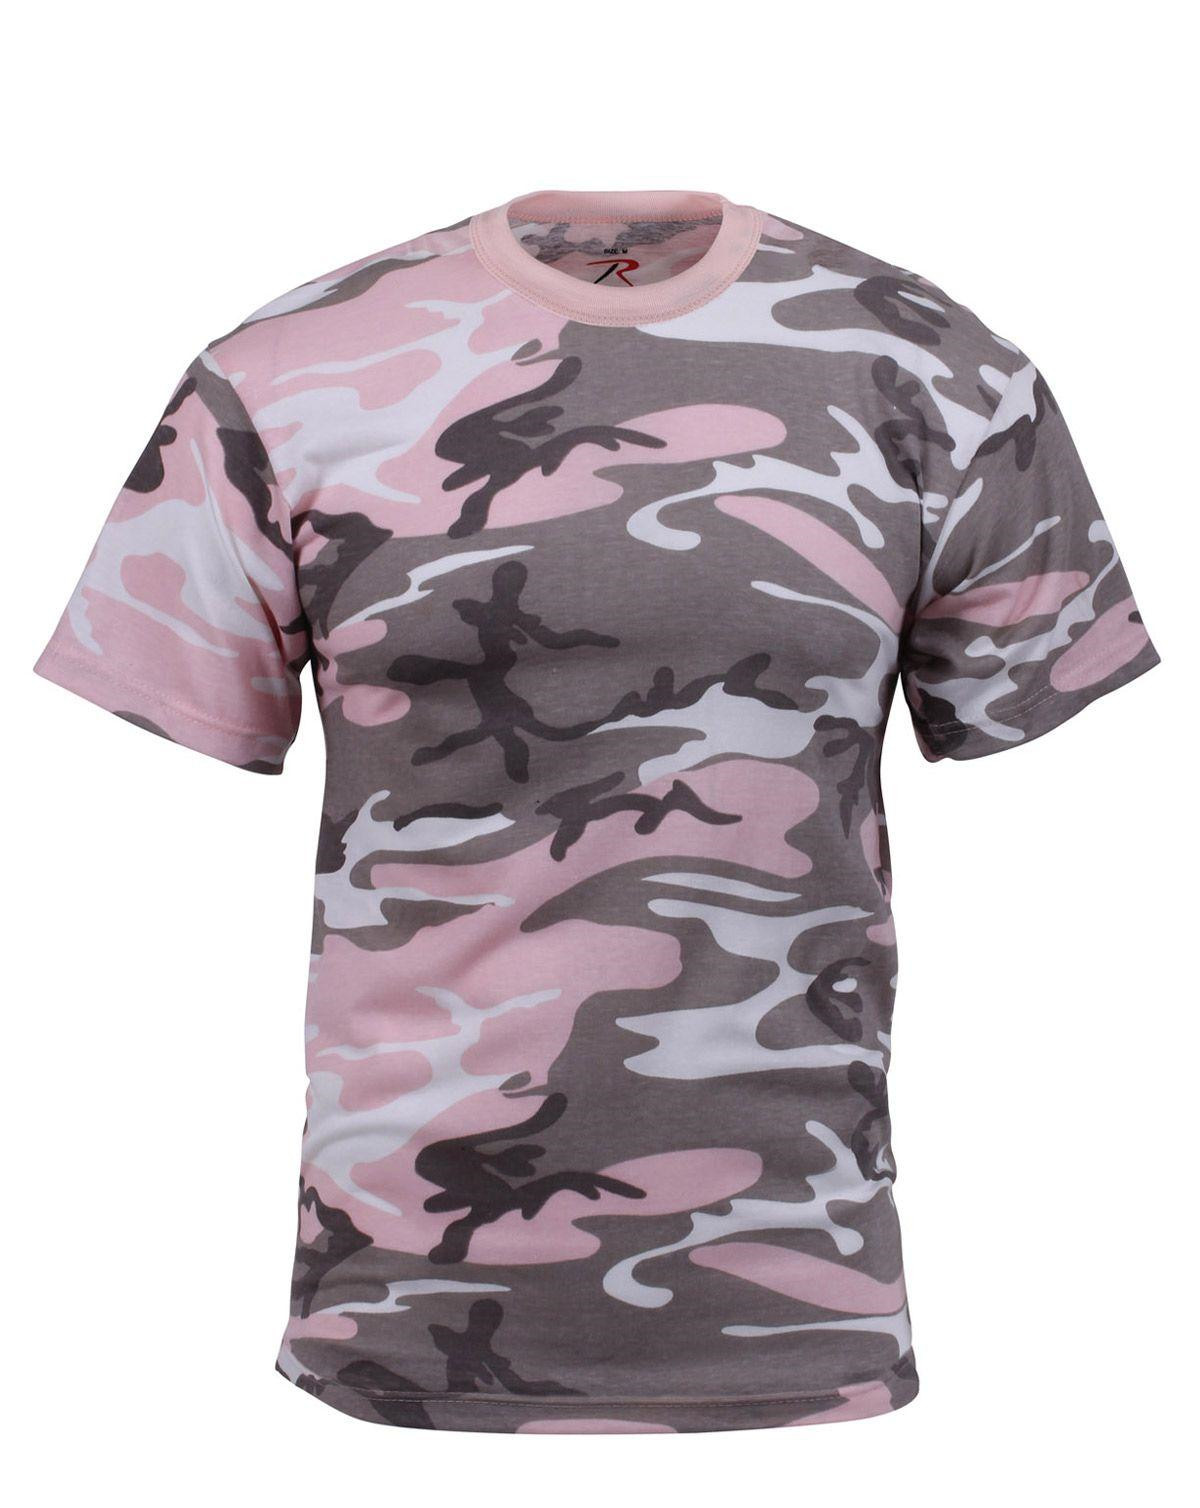 Rothco T-shirt (Pink, S)